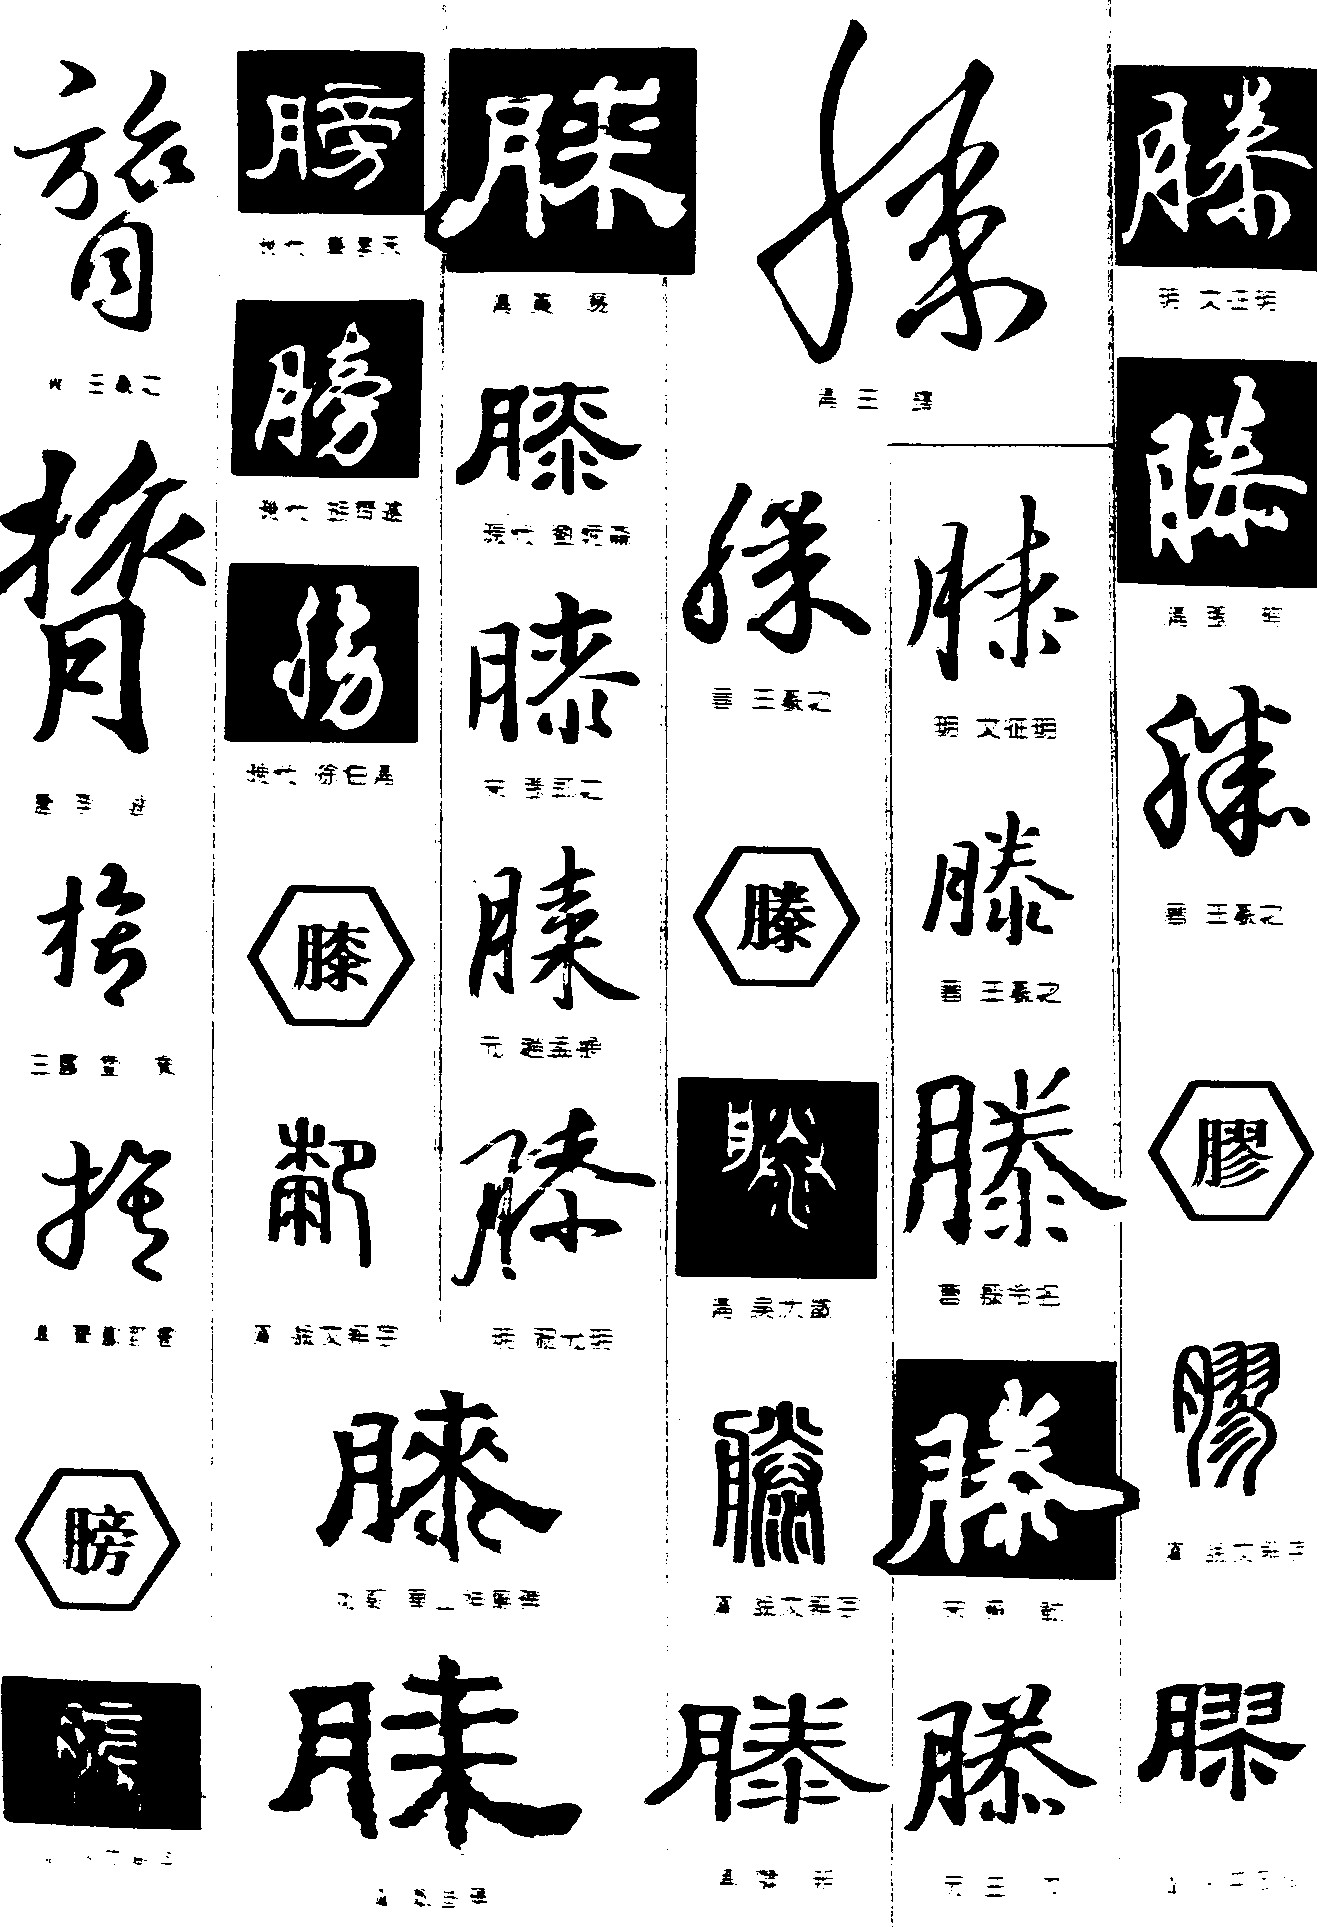 膂膀膝滕胶_书法字体_字体设计作品-中国字体设计网_.